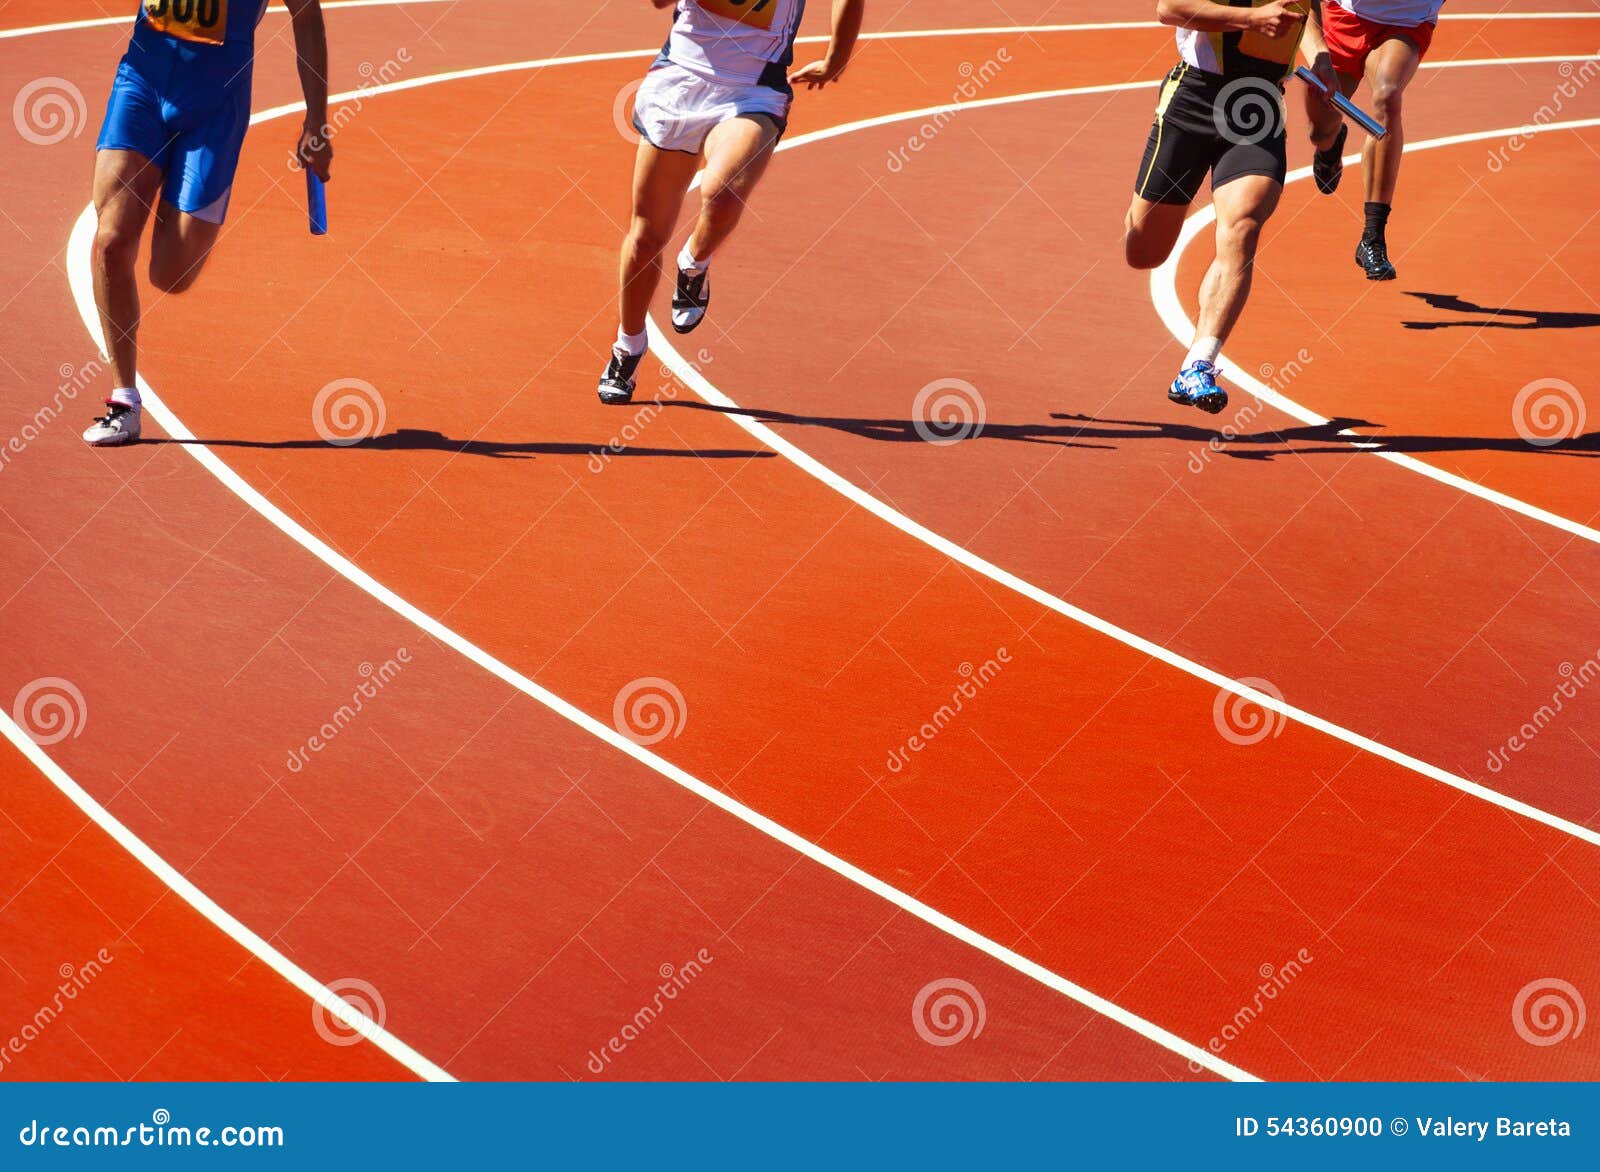 running athletes